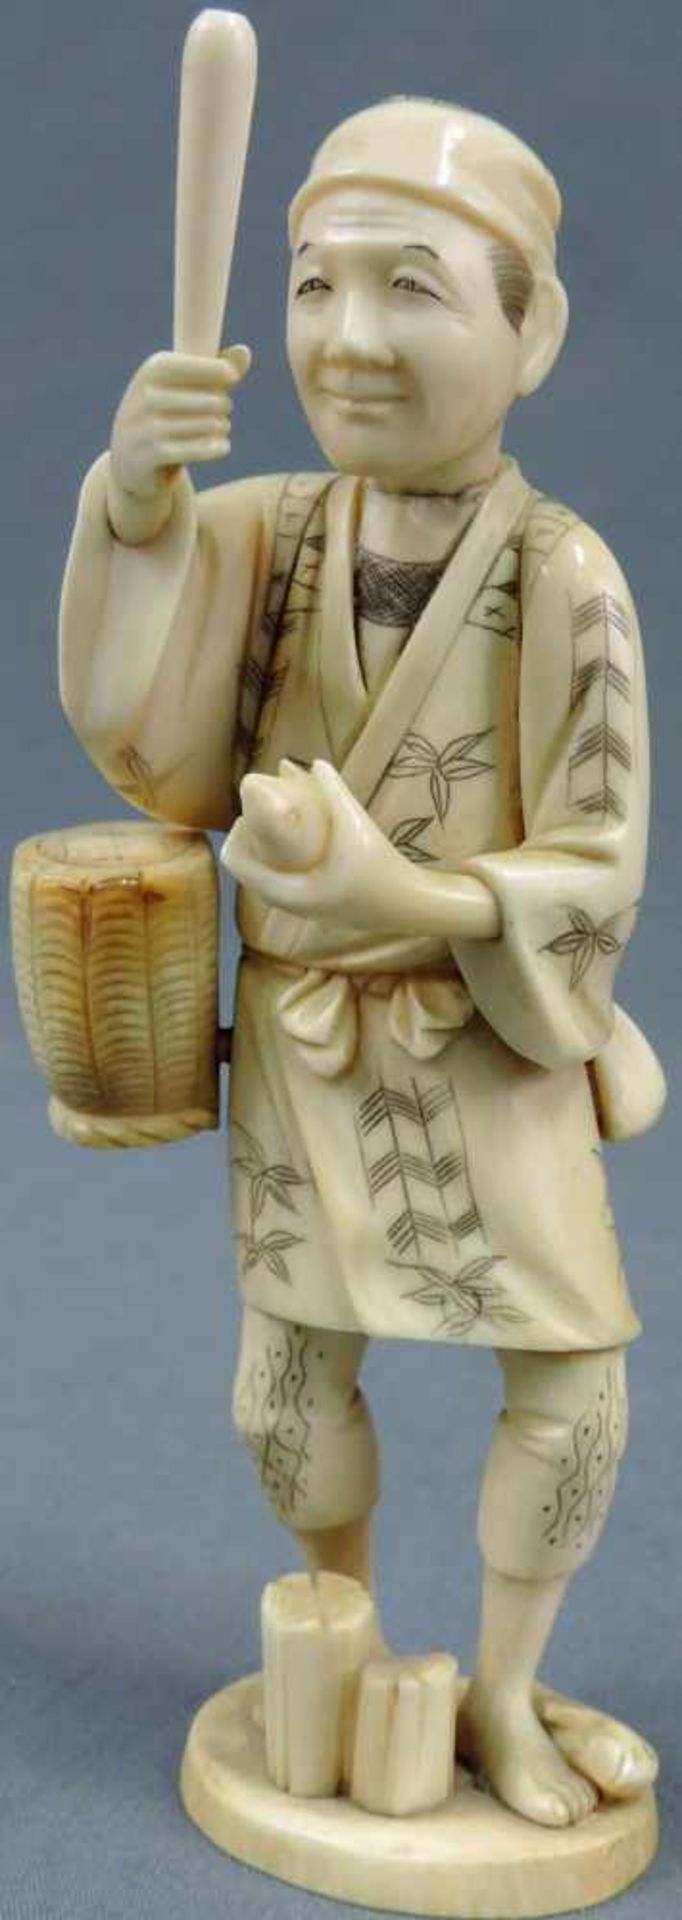 Figur, Fischer, China / Japan. Signiert. Elfenbein. 19 cm hoch. Für den lokalen Markt gefertigt um